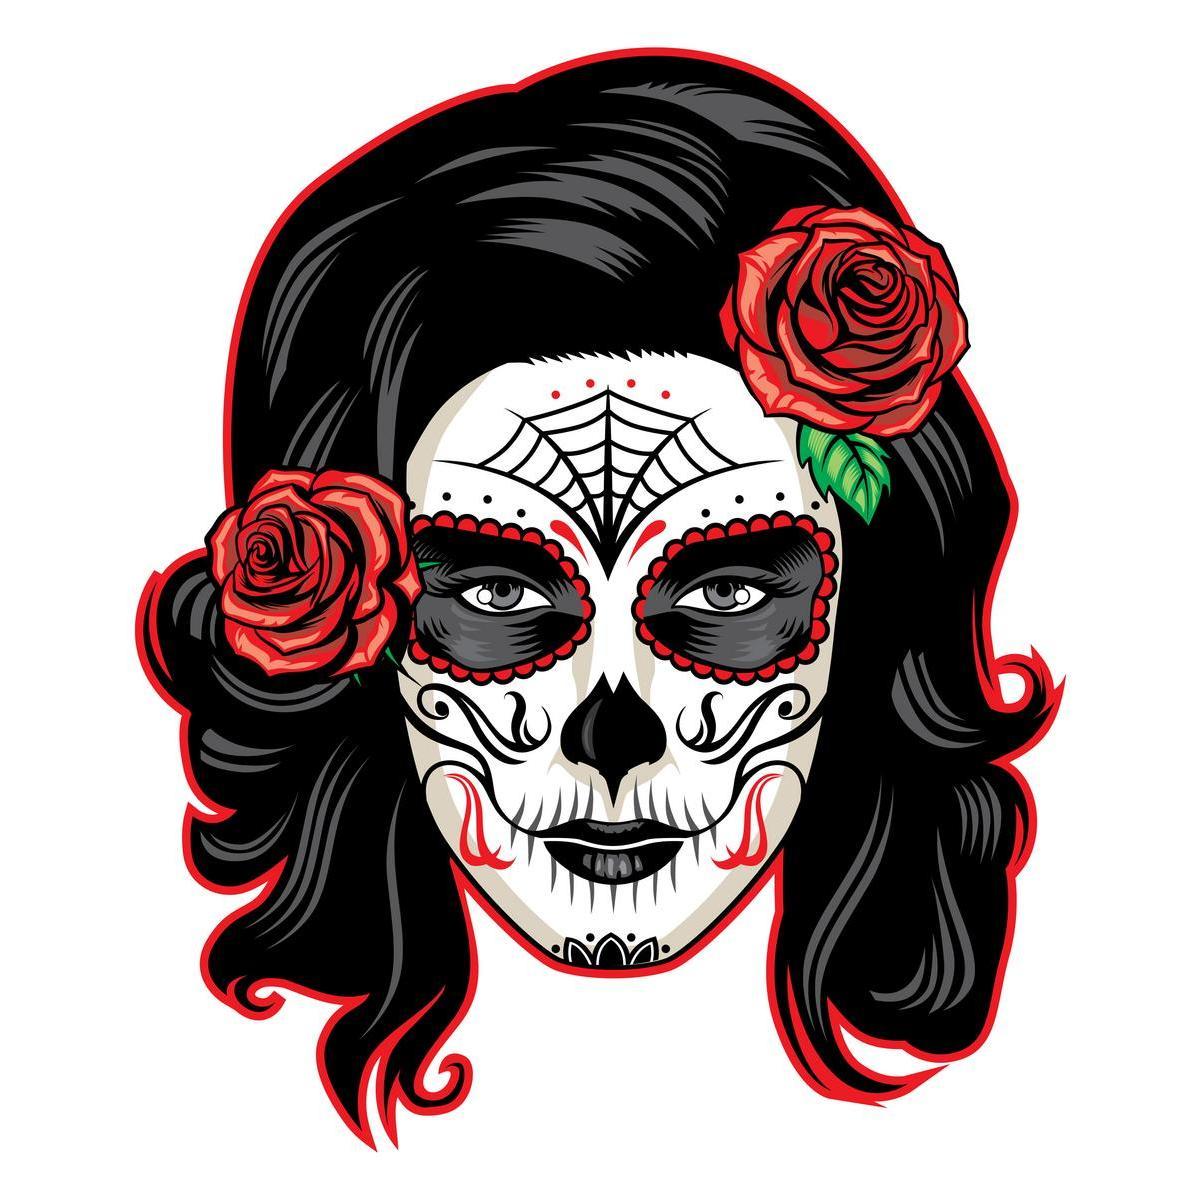 Kit de maquillage de tête de mort mexicaine - 16 x 20 x H 2 cm - Multicolore